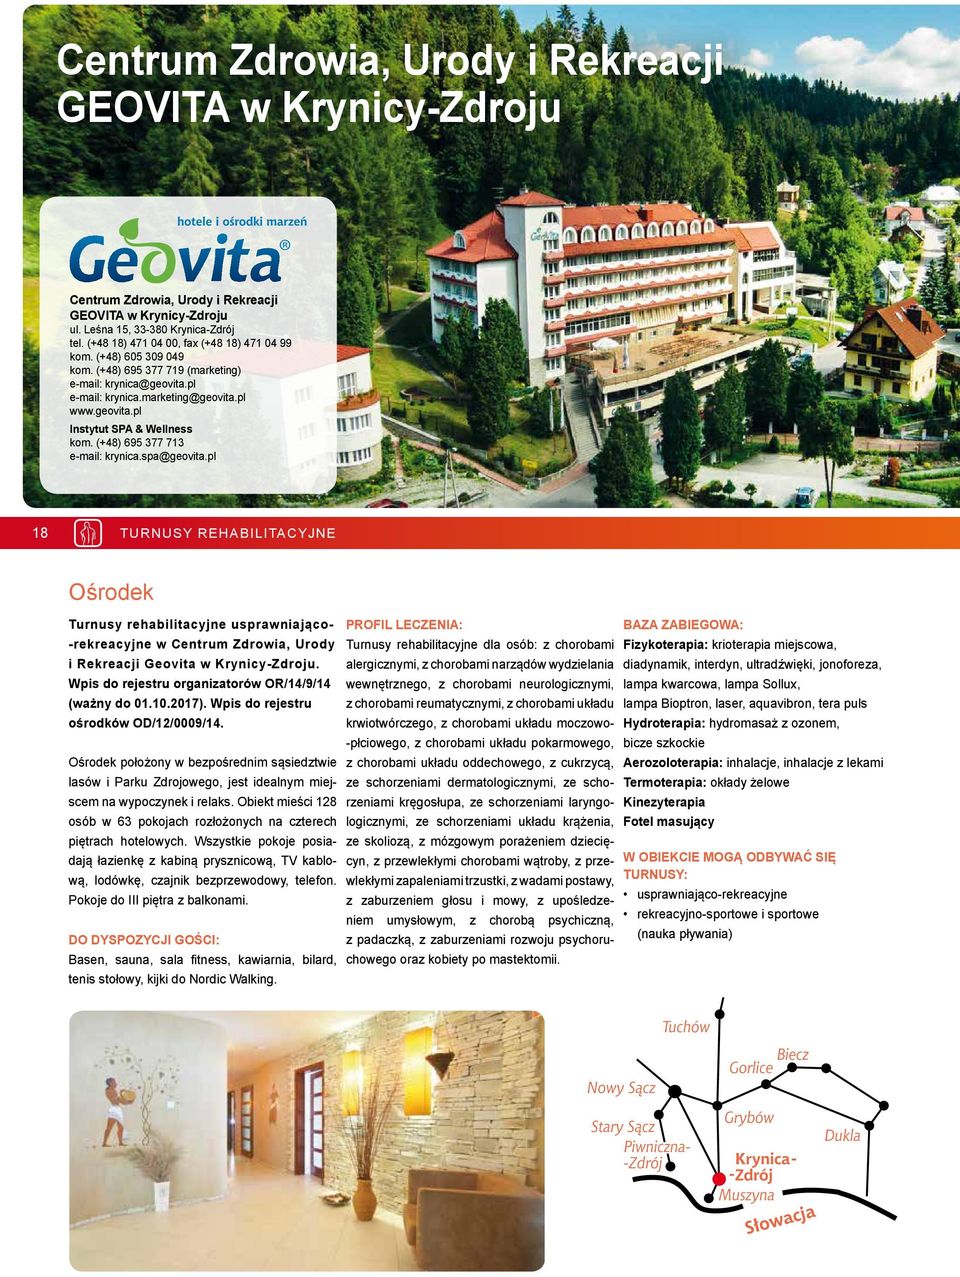 (+48) 695 377 713 e-mail: krynica.spa@geovita.pl 18 TURNUSY REHABILITACYJNE Ośrodek Turnusy rehabilitacyjne usprawniająco- -rekreacyjne w Centrum Zdrowia, Urody i Rekreacji Geovita w Krynicy-Zdroju.